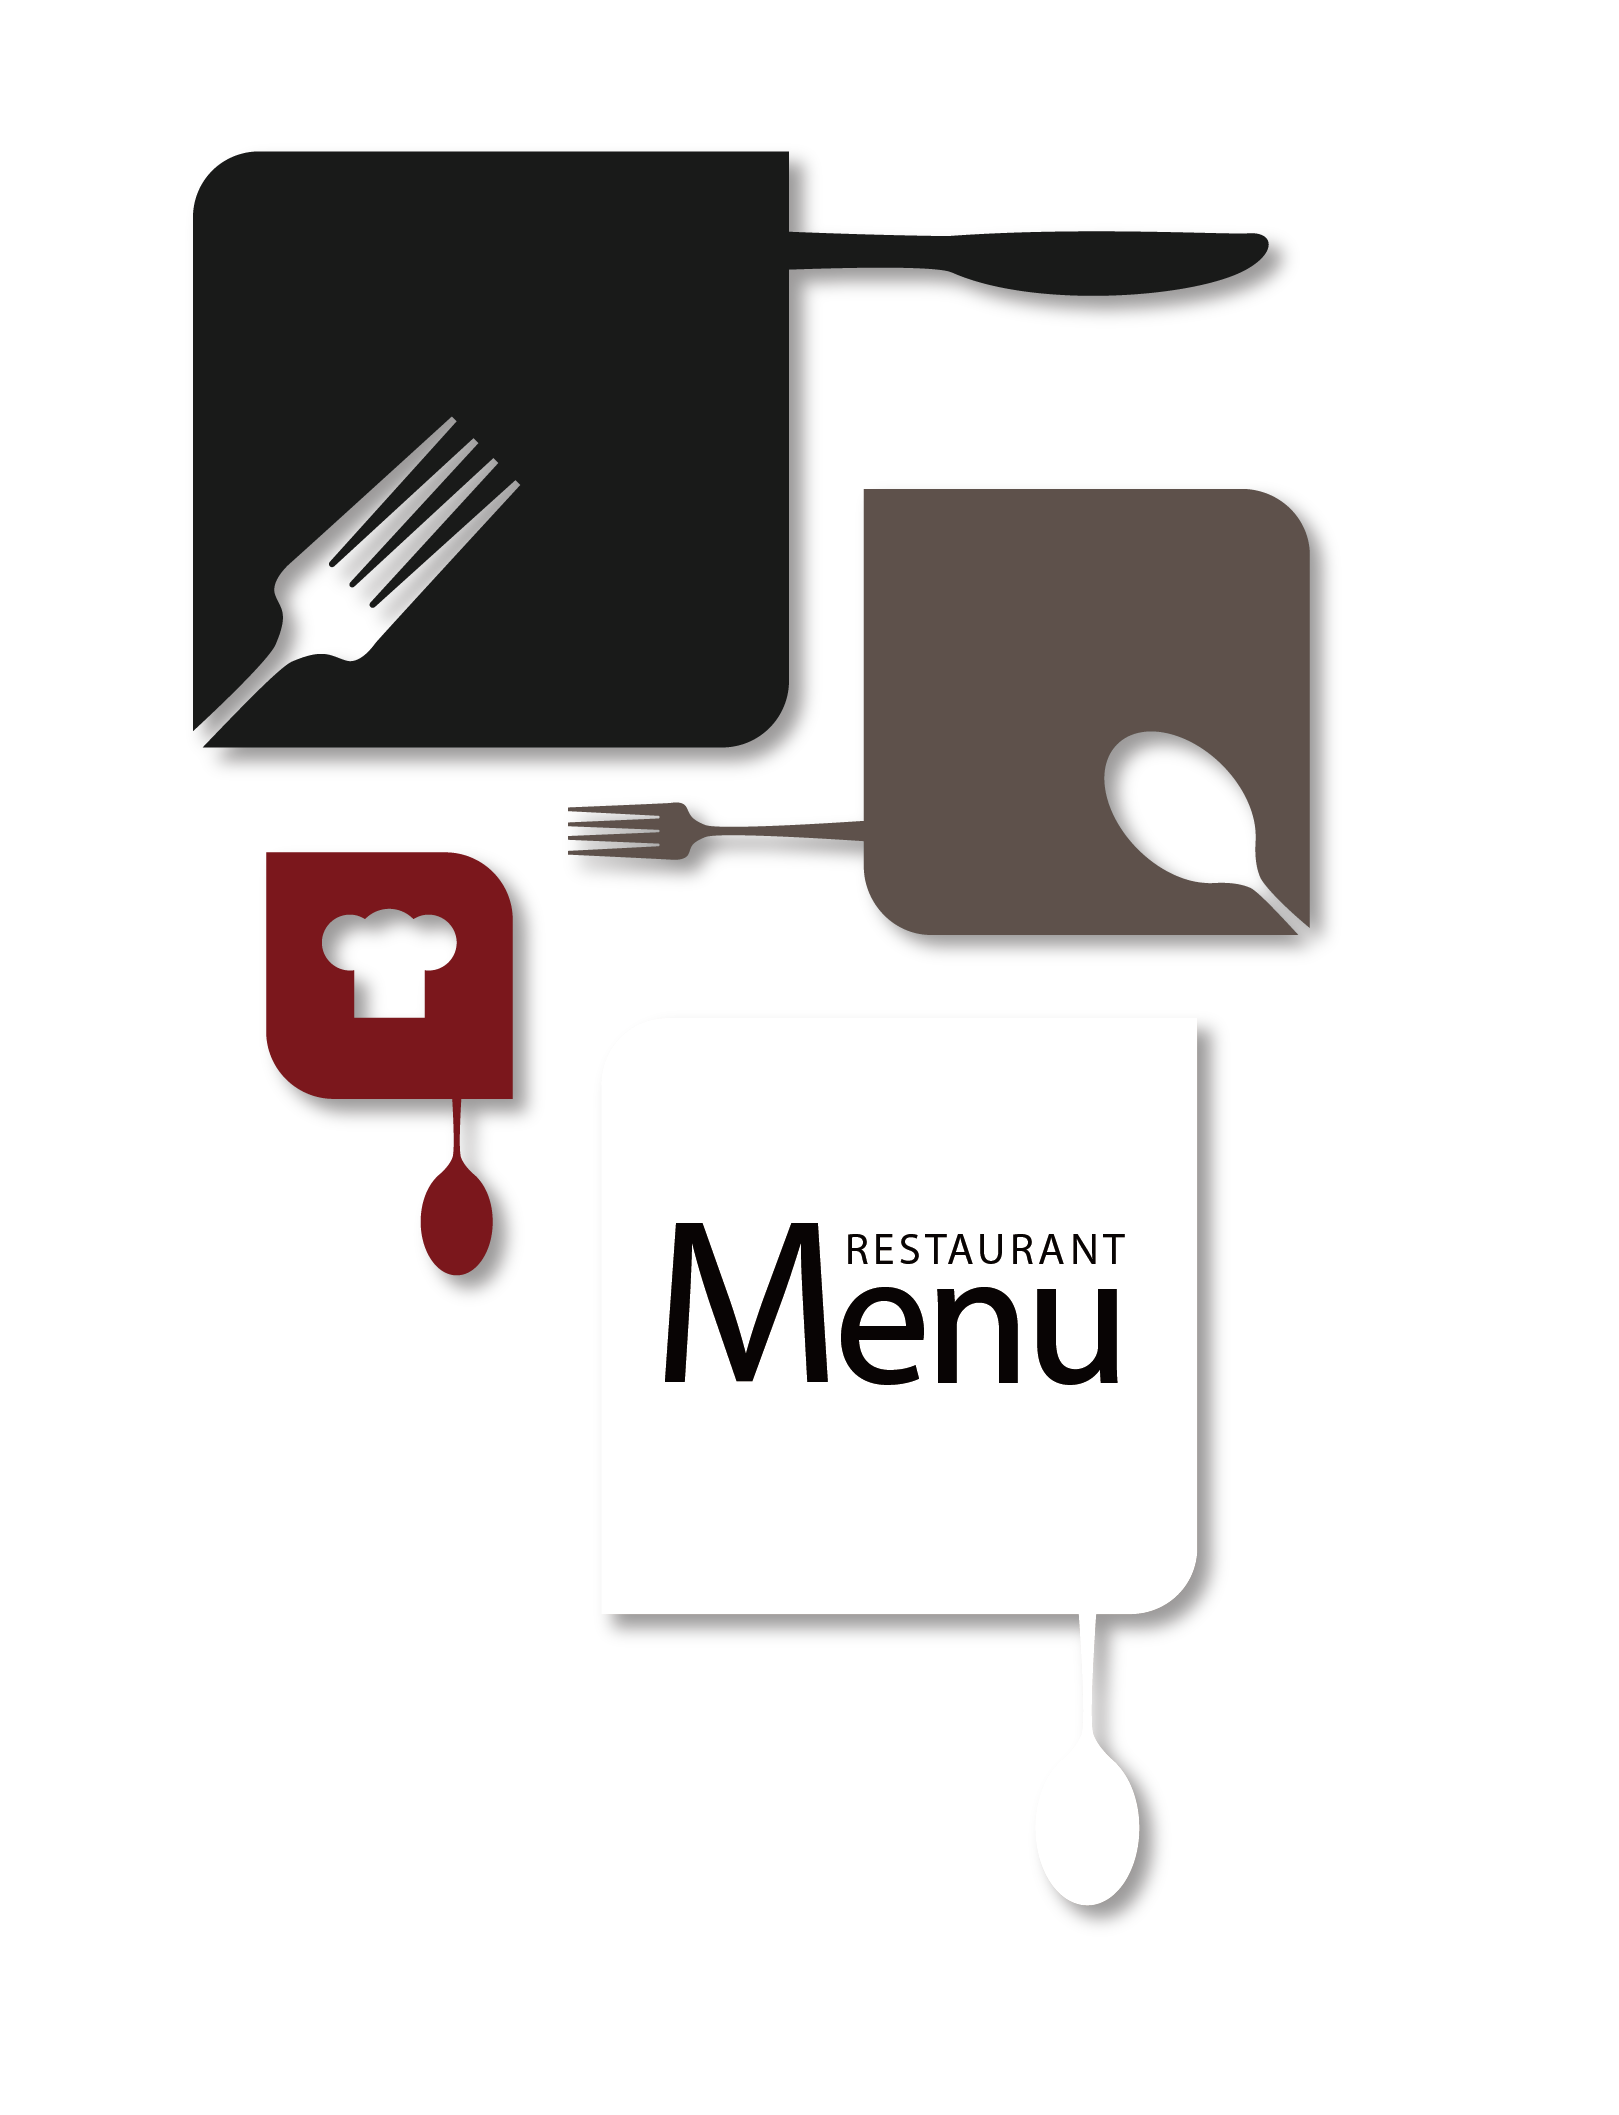 Dish Menu Icon Restaurant Free Download Image PNG Image